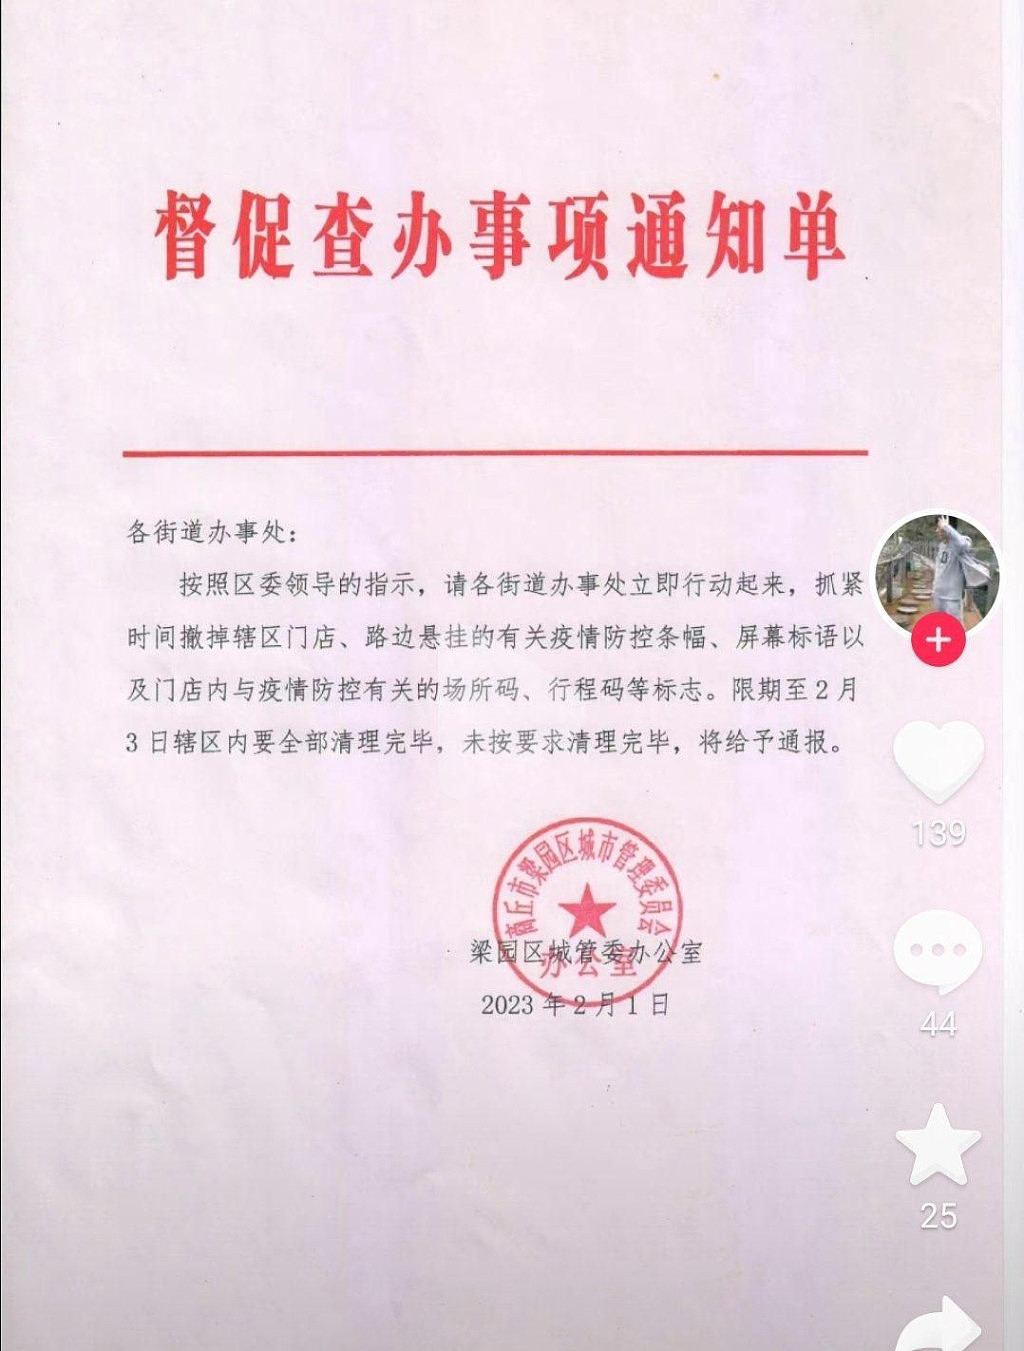 河南省商丘市梁园区城管委办公室2月1日发布致街道办事处的「督促查办事项通知单」，督促2月3日内清除疫情防控横额。